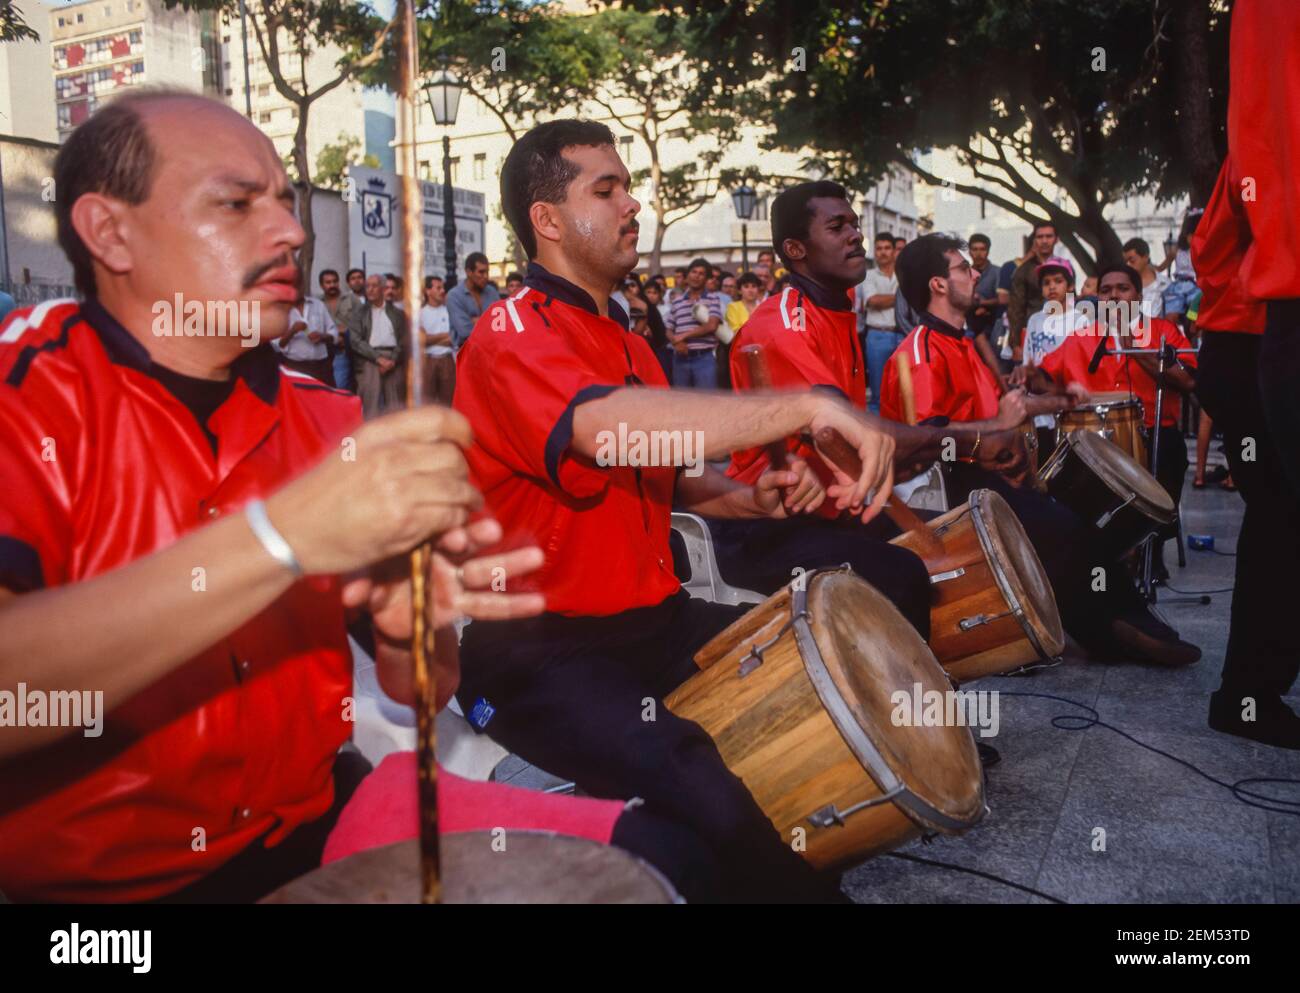 CARACAS, VENEZUELA - Band spielt Gaita zuliana Musik auf der Plaza Bolivar. Musiker links spielt Furro-Trommel. Stockfoto